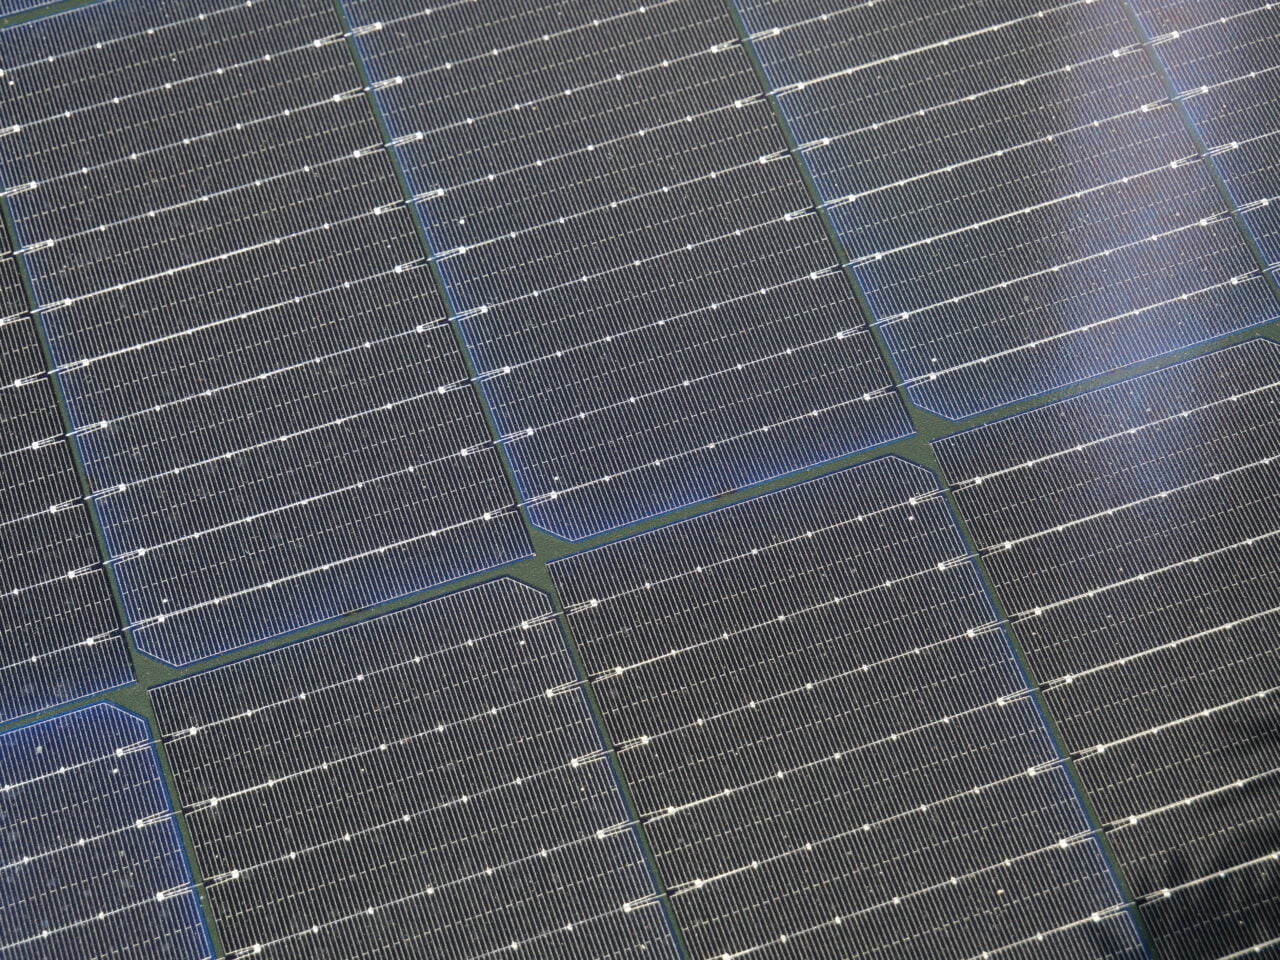 Panele słoneczne pokryte siecią cienkich linii, widoczne z bliskiej perspektywy, pod kątem, z odzwierciedleniem światła słonecznego.